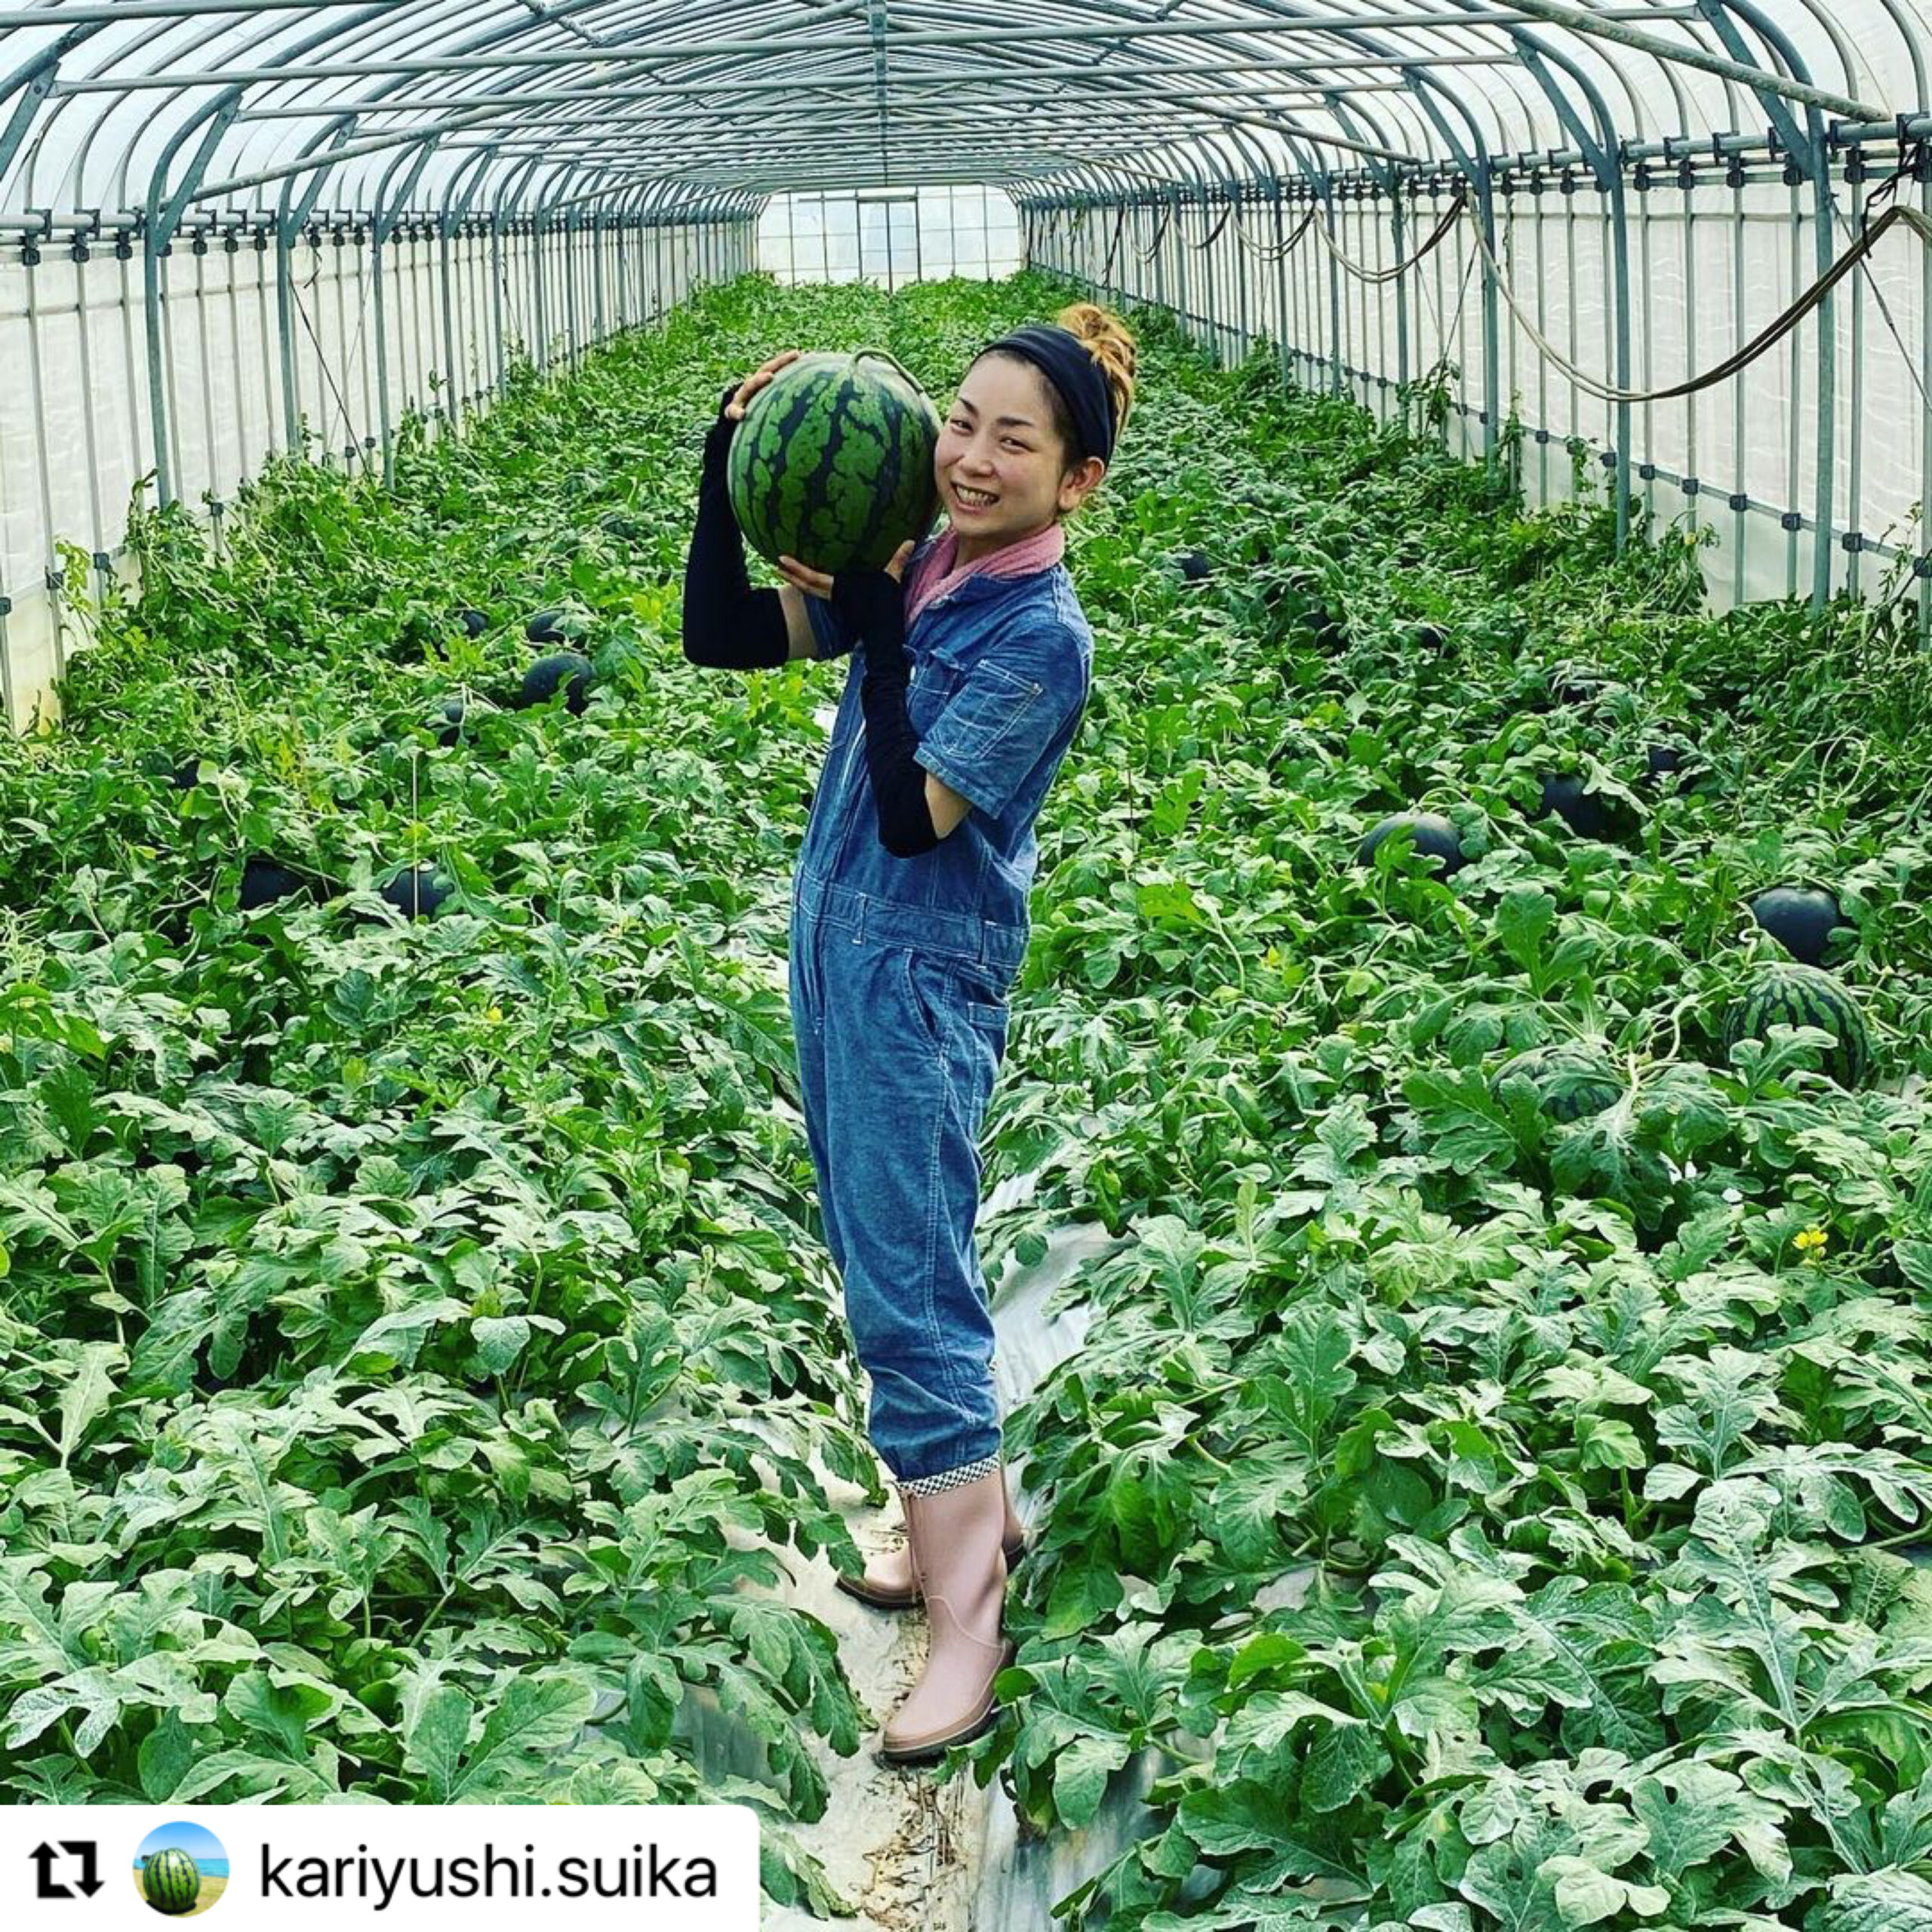 本日はスイカ農家の かりゆしすいか🍉沖縄農家さん @kariyushi.suika をご紹介!